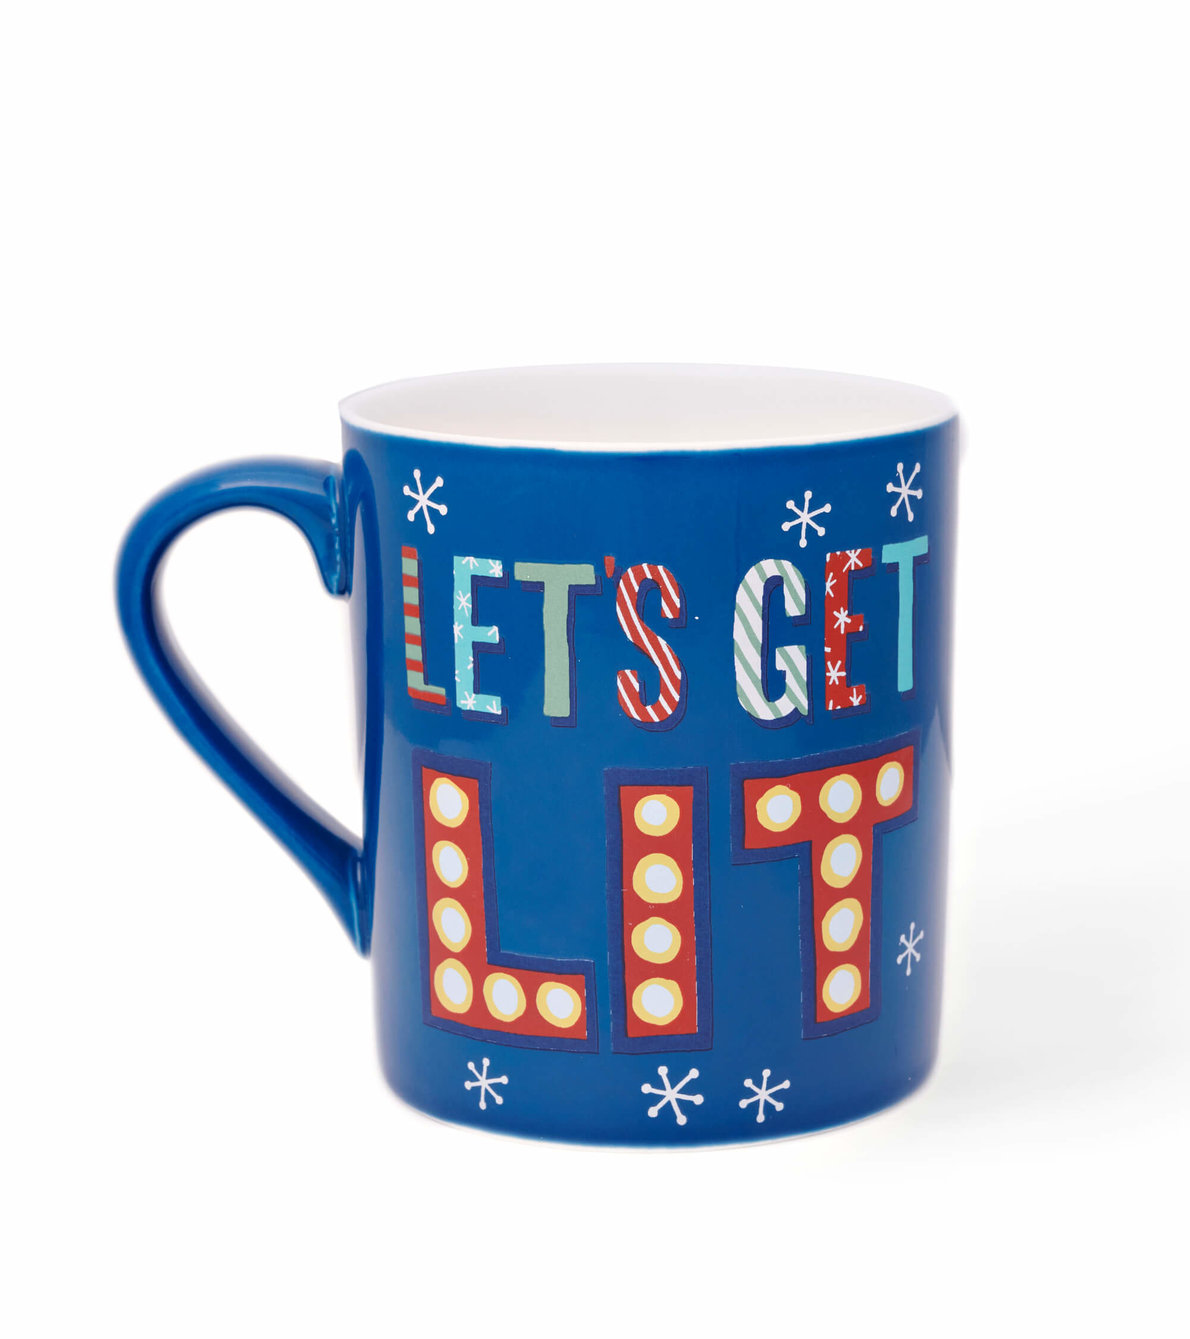 View larger image of Get Lit Ceramic Mug